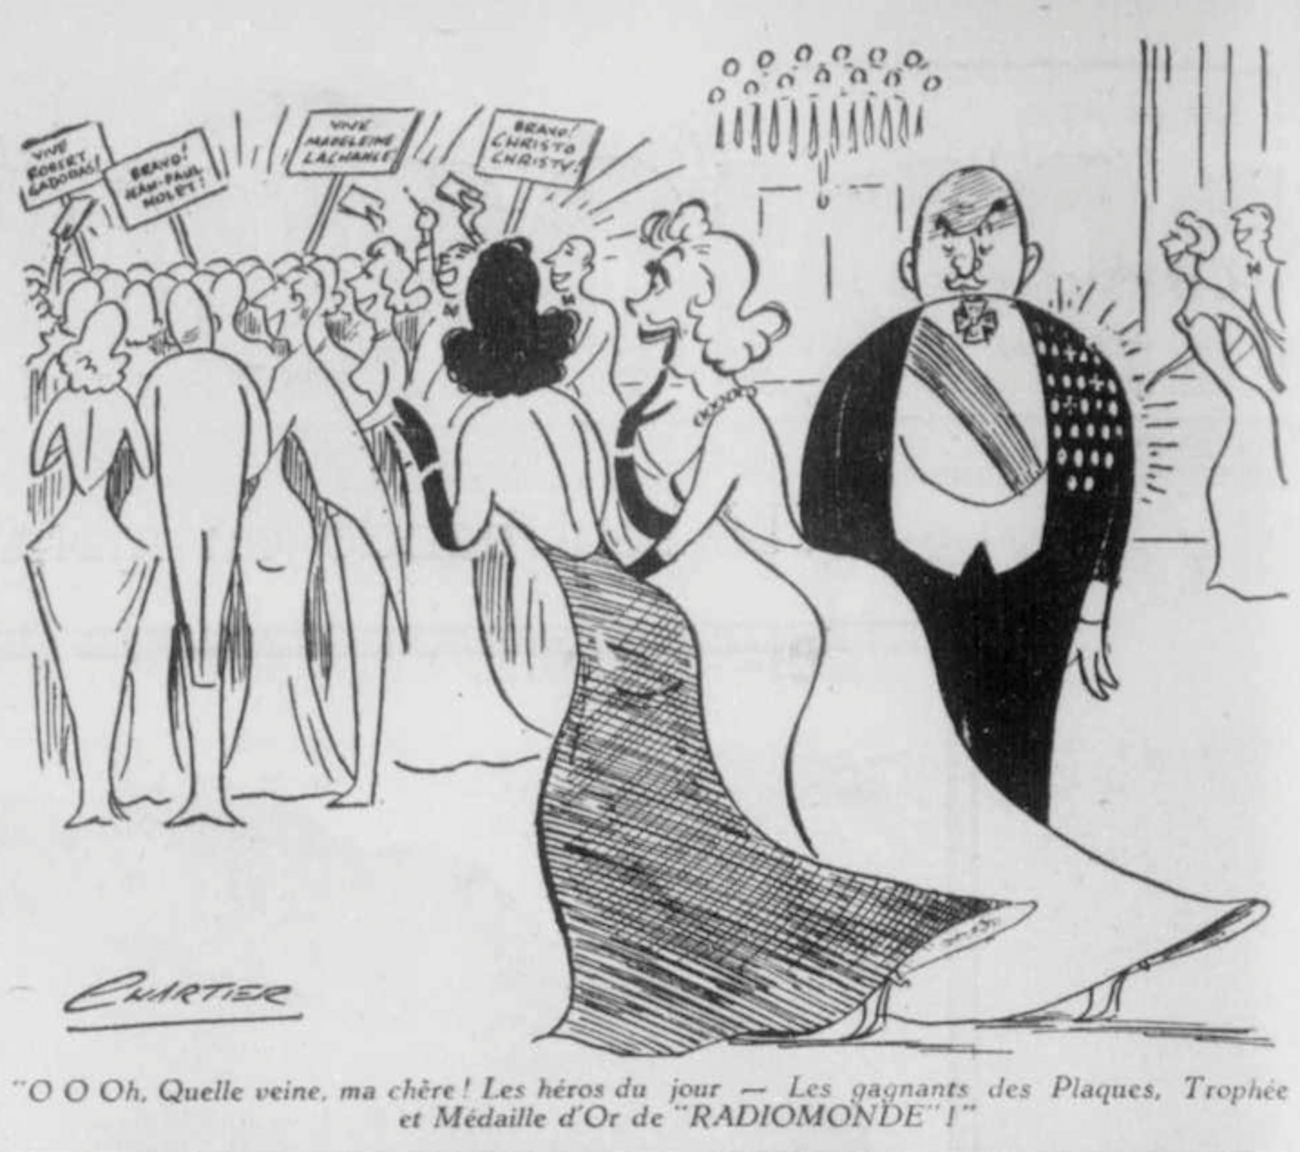 Caricature d'Albert Chartier parue dans Radiomonde le 7 avril 1951. L'illustration montre deux femmes se dirigeant vers une foule acclamant d'autres personnes. L'une des femmes dit à l'autre : « O O Oh. Quelle veine, ma chère! Les héros du jour – Les gagnants des Plaques, Trophée et Médaille d'Or de “RADIOMONDE”! »